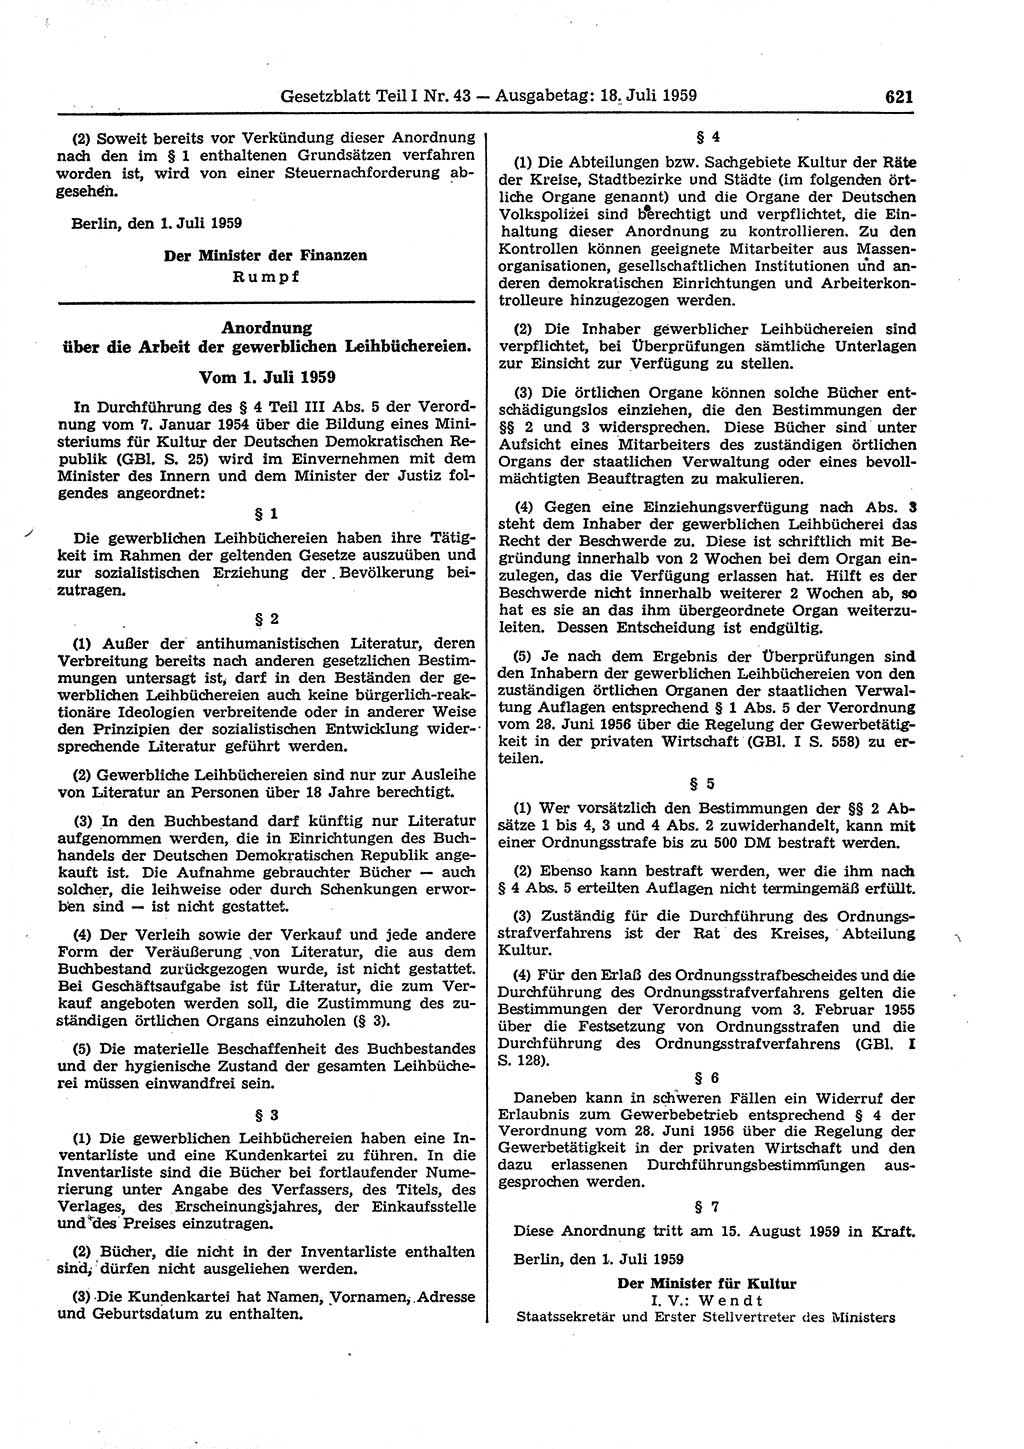 Gesetzblatt (GBl.) der Deutschen Demokratischen Republik (DDR) Teil Ⅰ 1959, Seite 621 (GBl. DDR Ⅰ 1959, S. 621)